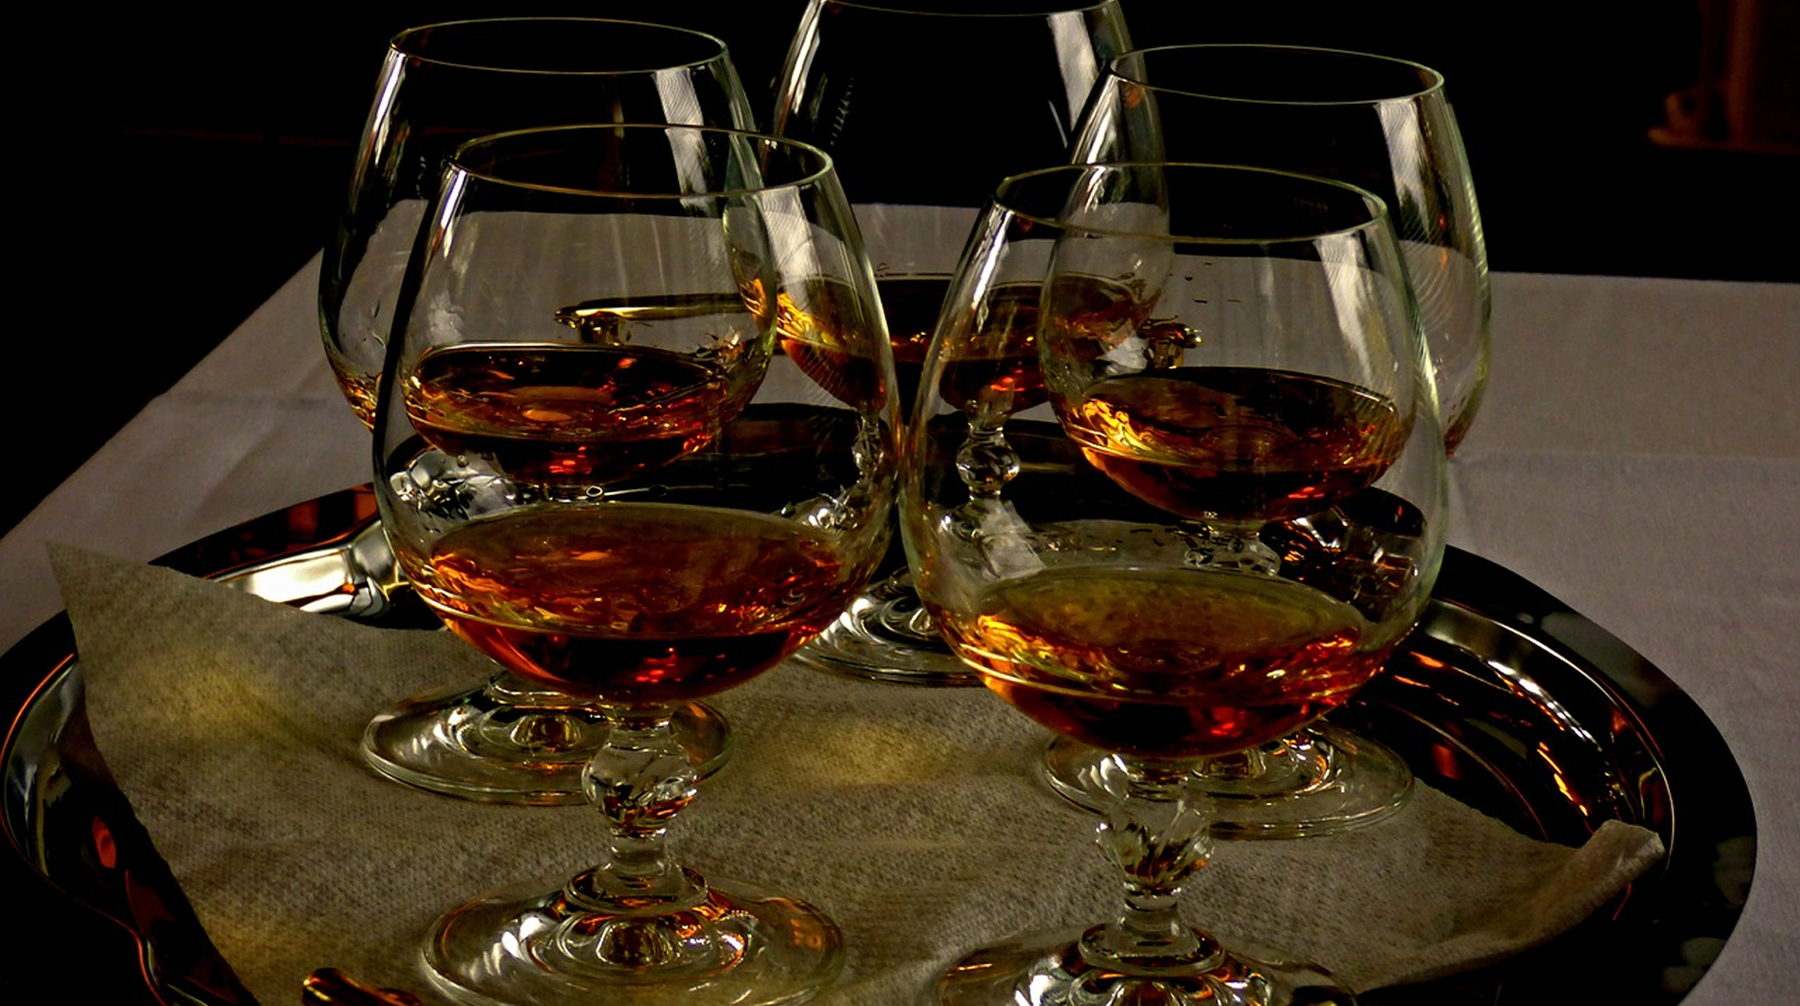 СМИ сообщили о возможном дефиците иностранных спиртных напитков из-за принятого закона Фото: © pixabai.com